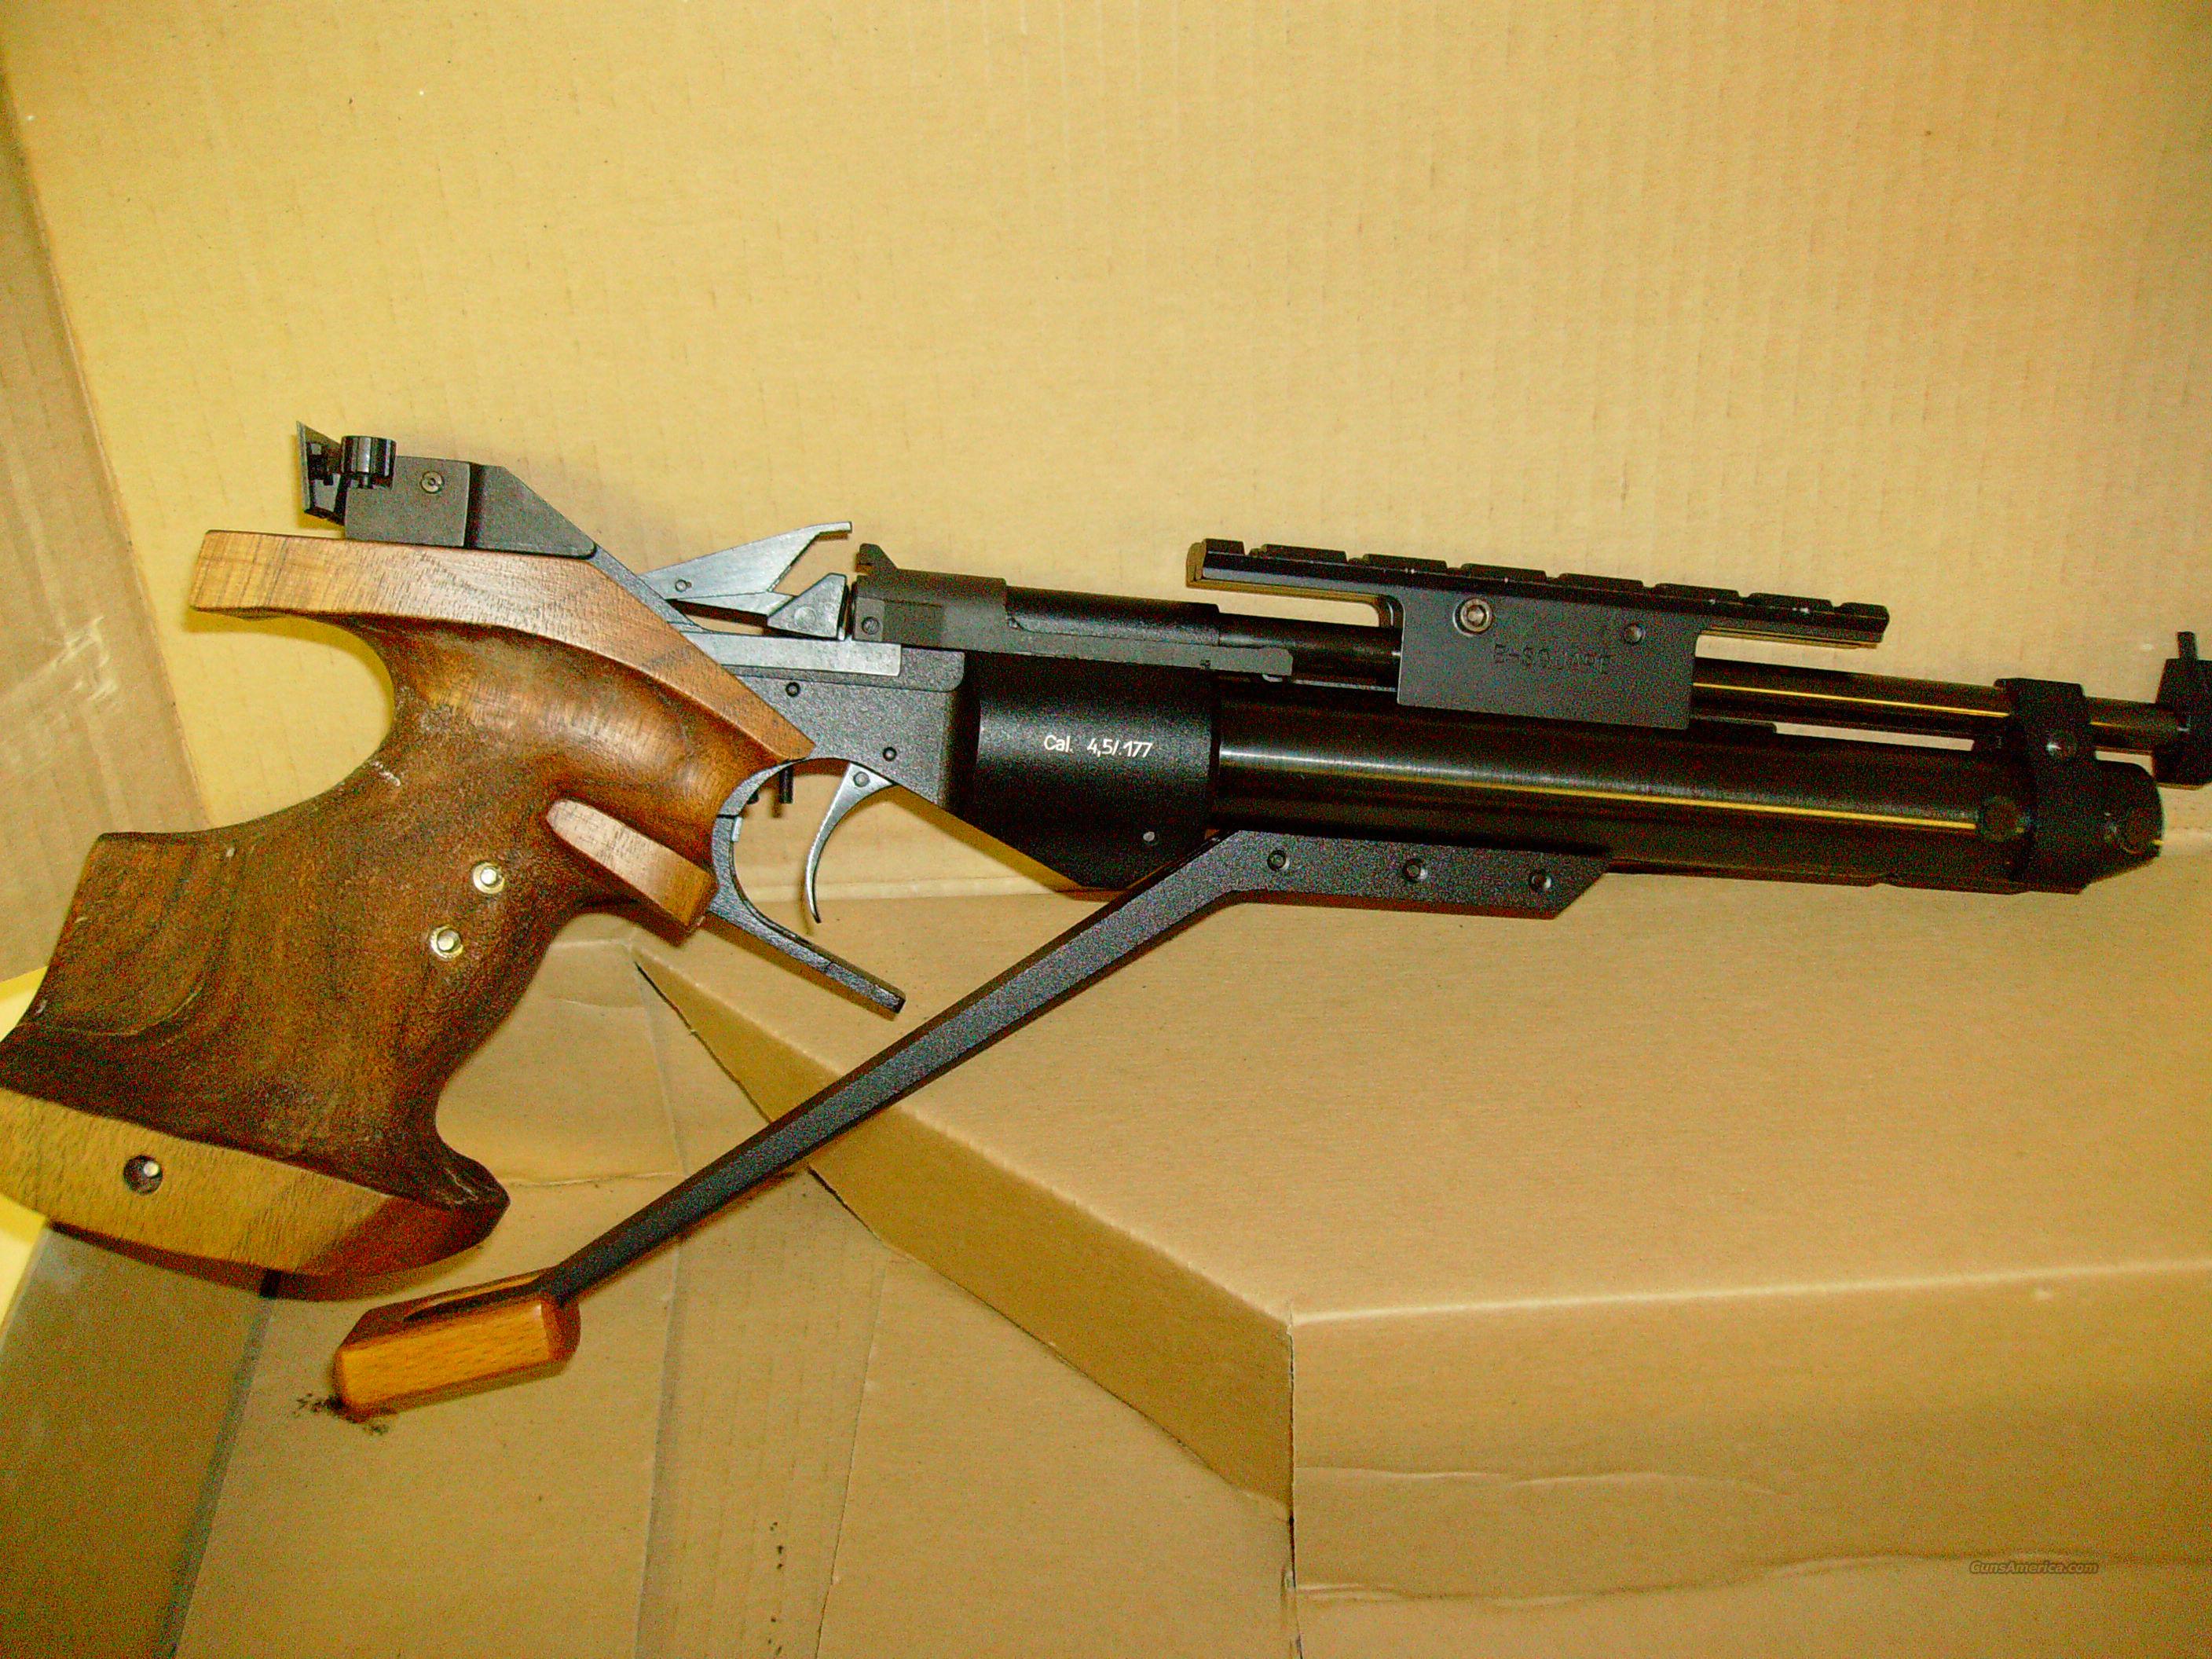  Baikal  Izh 46M 177 pellet  pistol  for sale